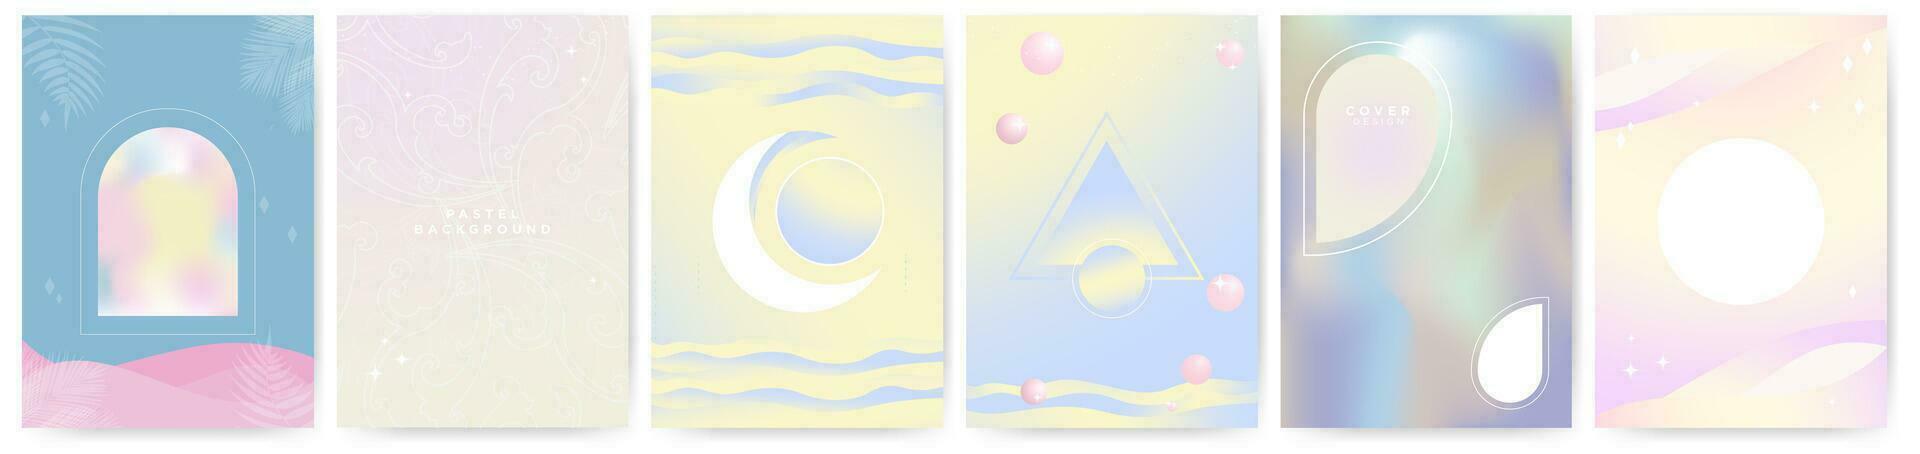 coleção do pastel poster fundos e modelos com branco geométrico formas para cópia de espaço. líquido pastel gradientes, pastel ondas, crescente lua. vetor ilustração. eps 10.